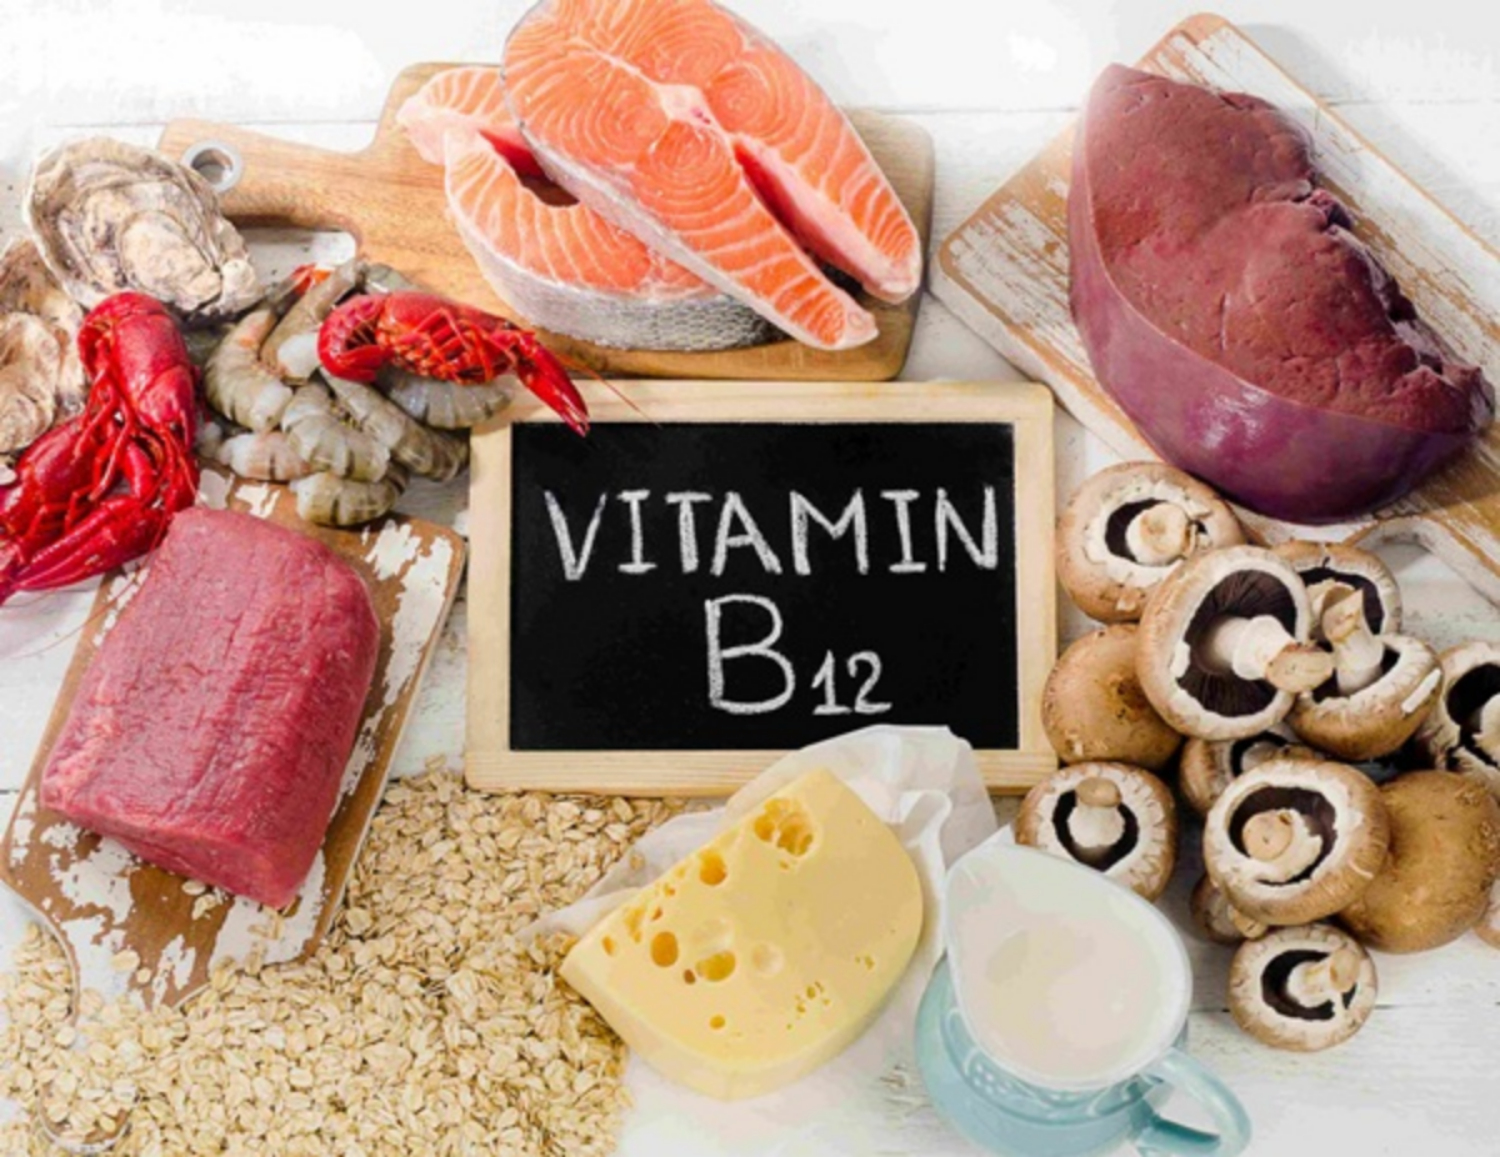 10 loại thực phẩm giàu vitamin B12 (kèm các lựa chọn dành cho người ăn chay)